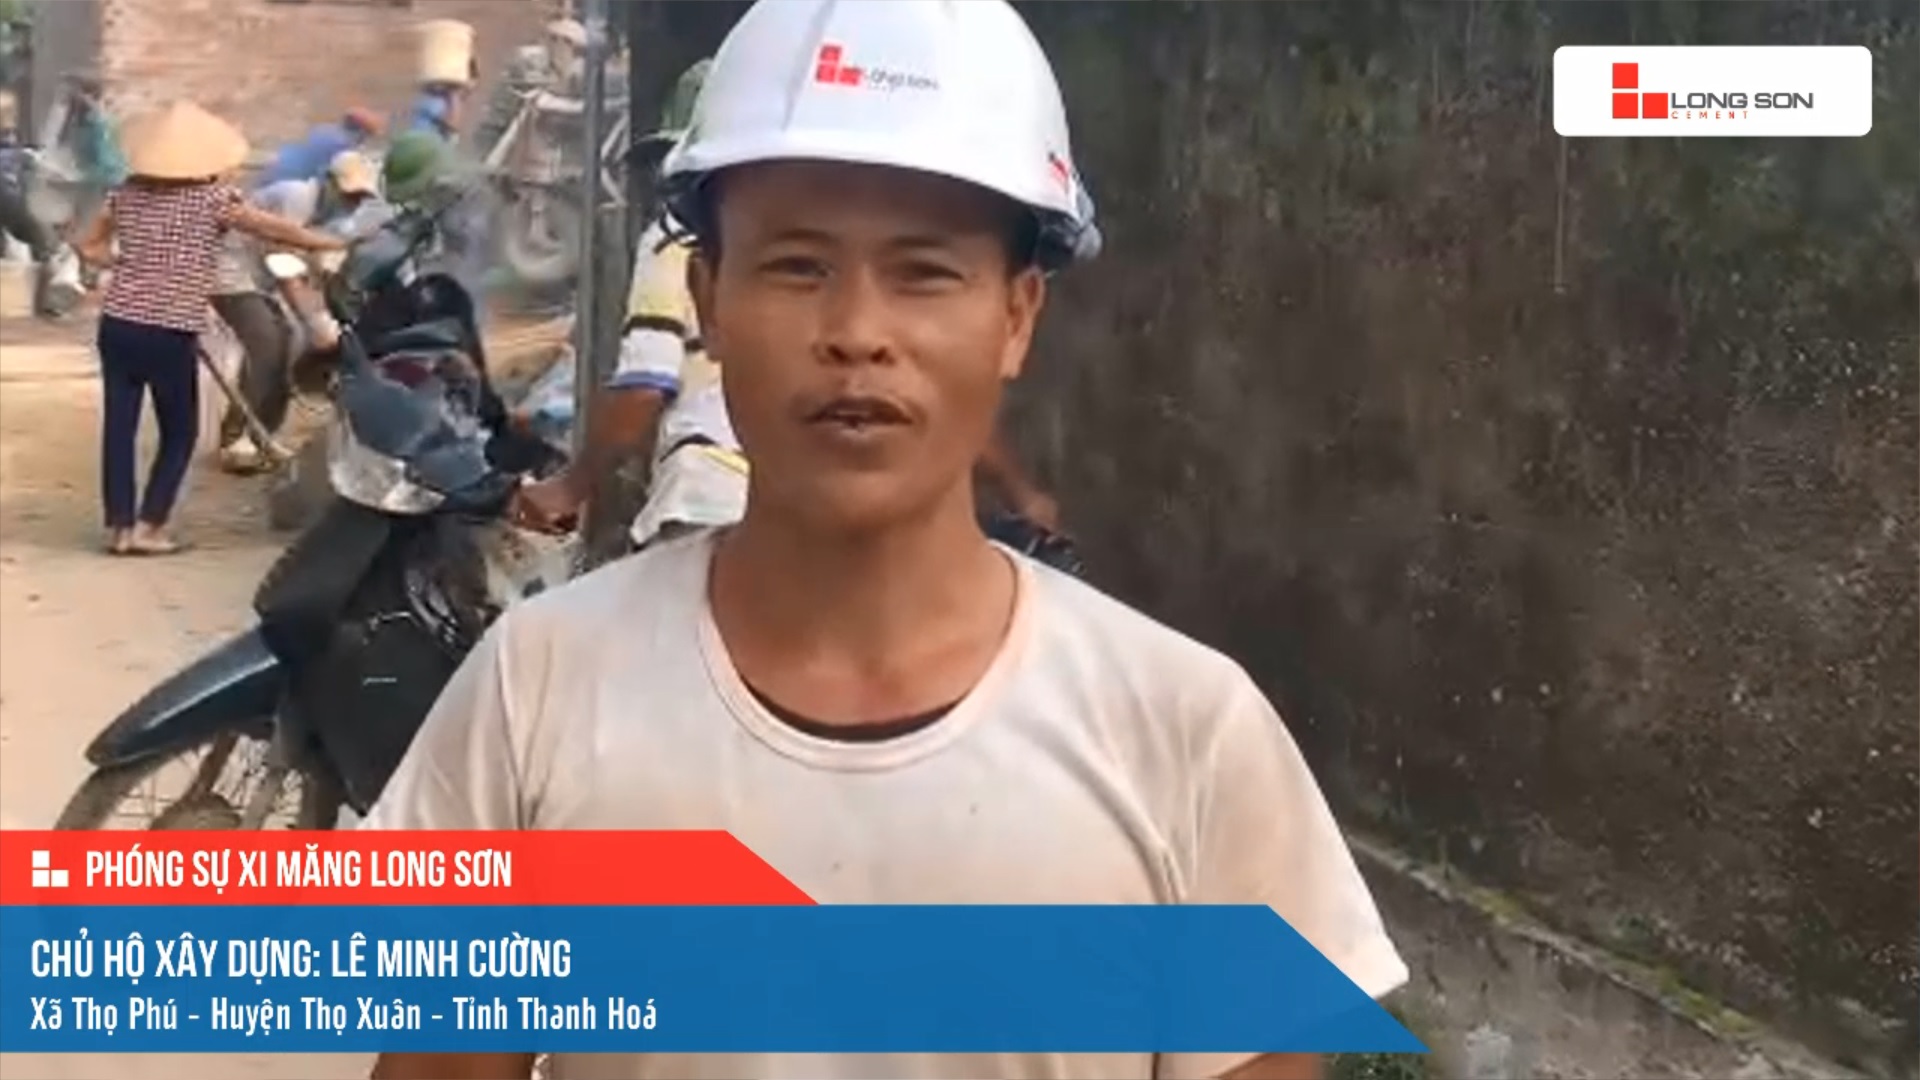 Phóng sự công trình sử dụng xi măng Long Sơn tại Thanh Hóa ngày 27/10/2021